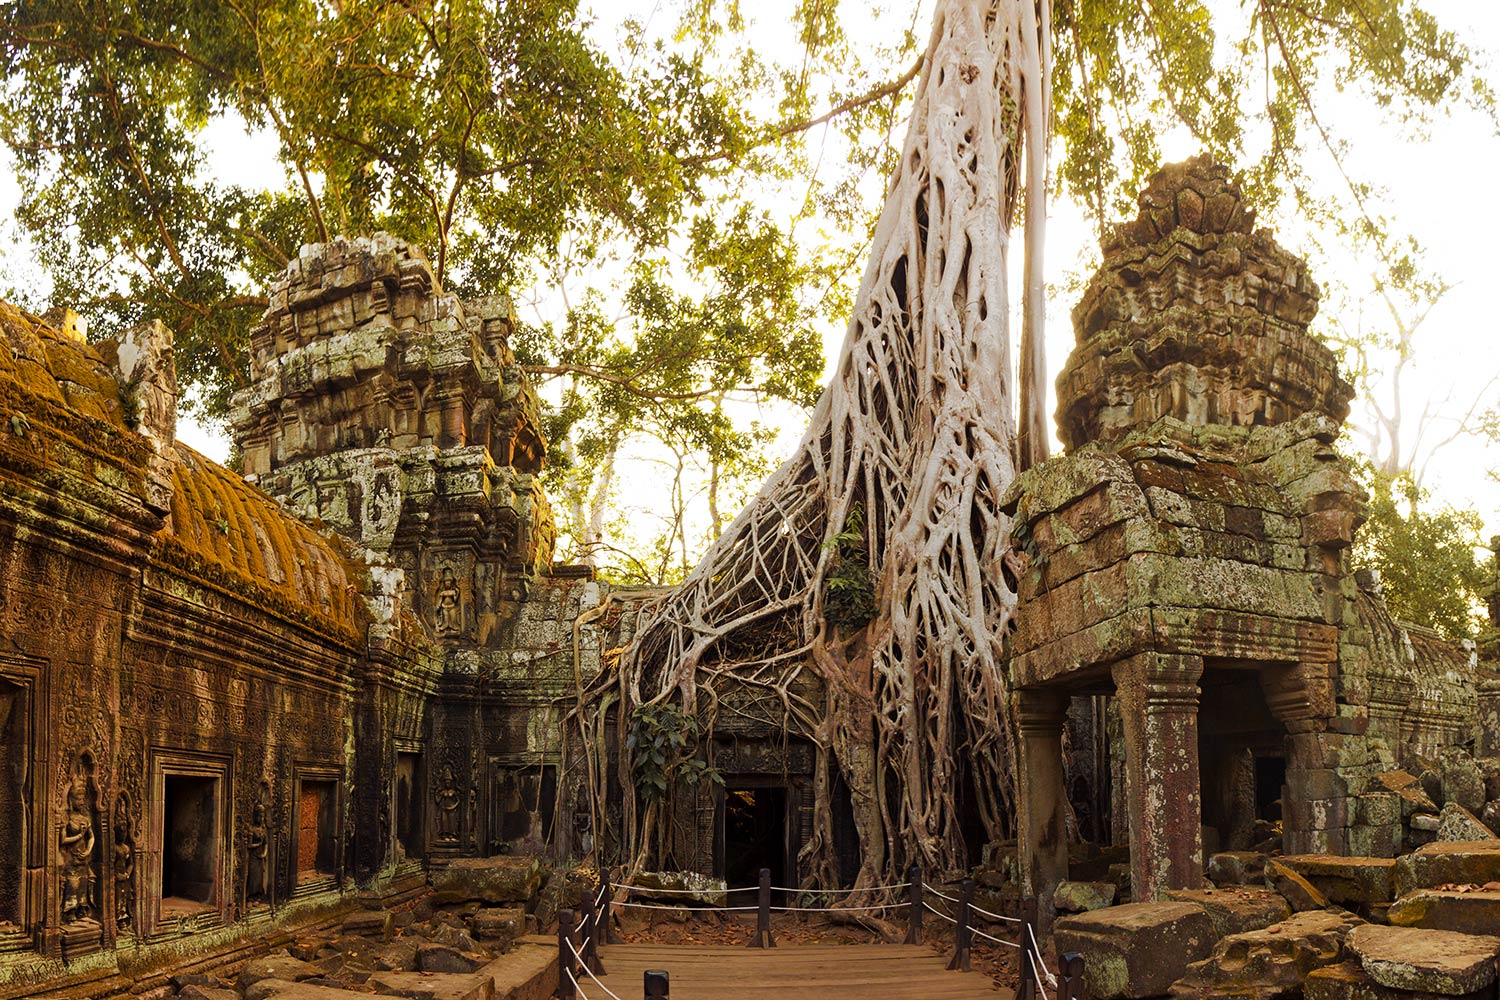 Temple Ta Prohm, Angkor, Cambodge / Ta Prohm Temple, Angkor, Cambodia